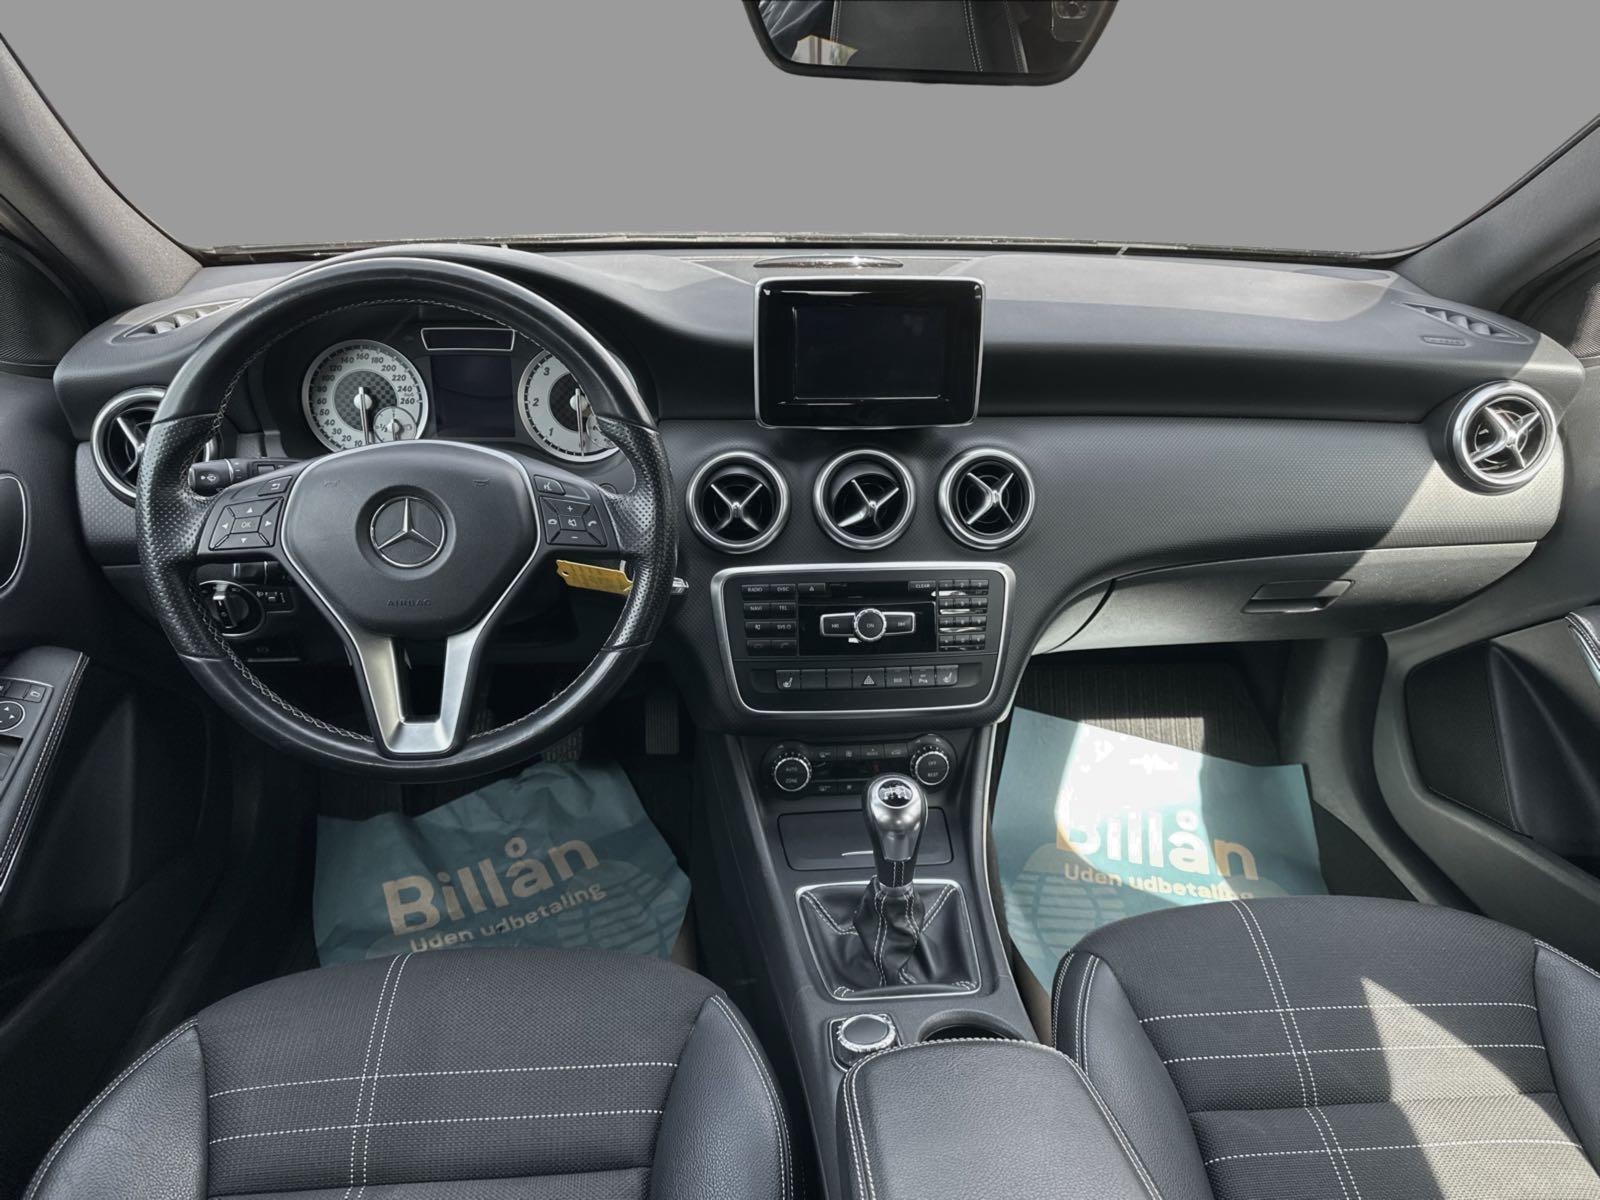 Billede af Mercedes-Benz A180 d 1,5 CDI Business 109HK 5d 6g